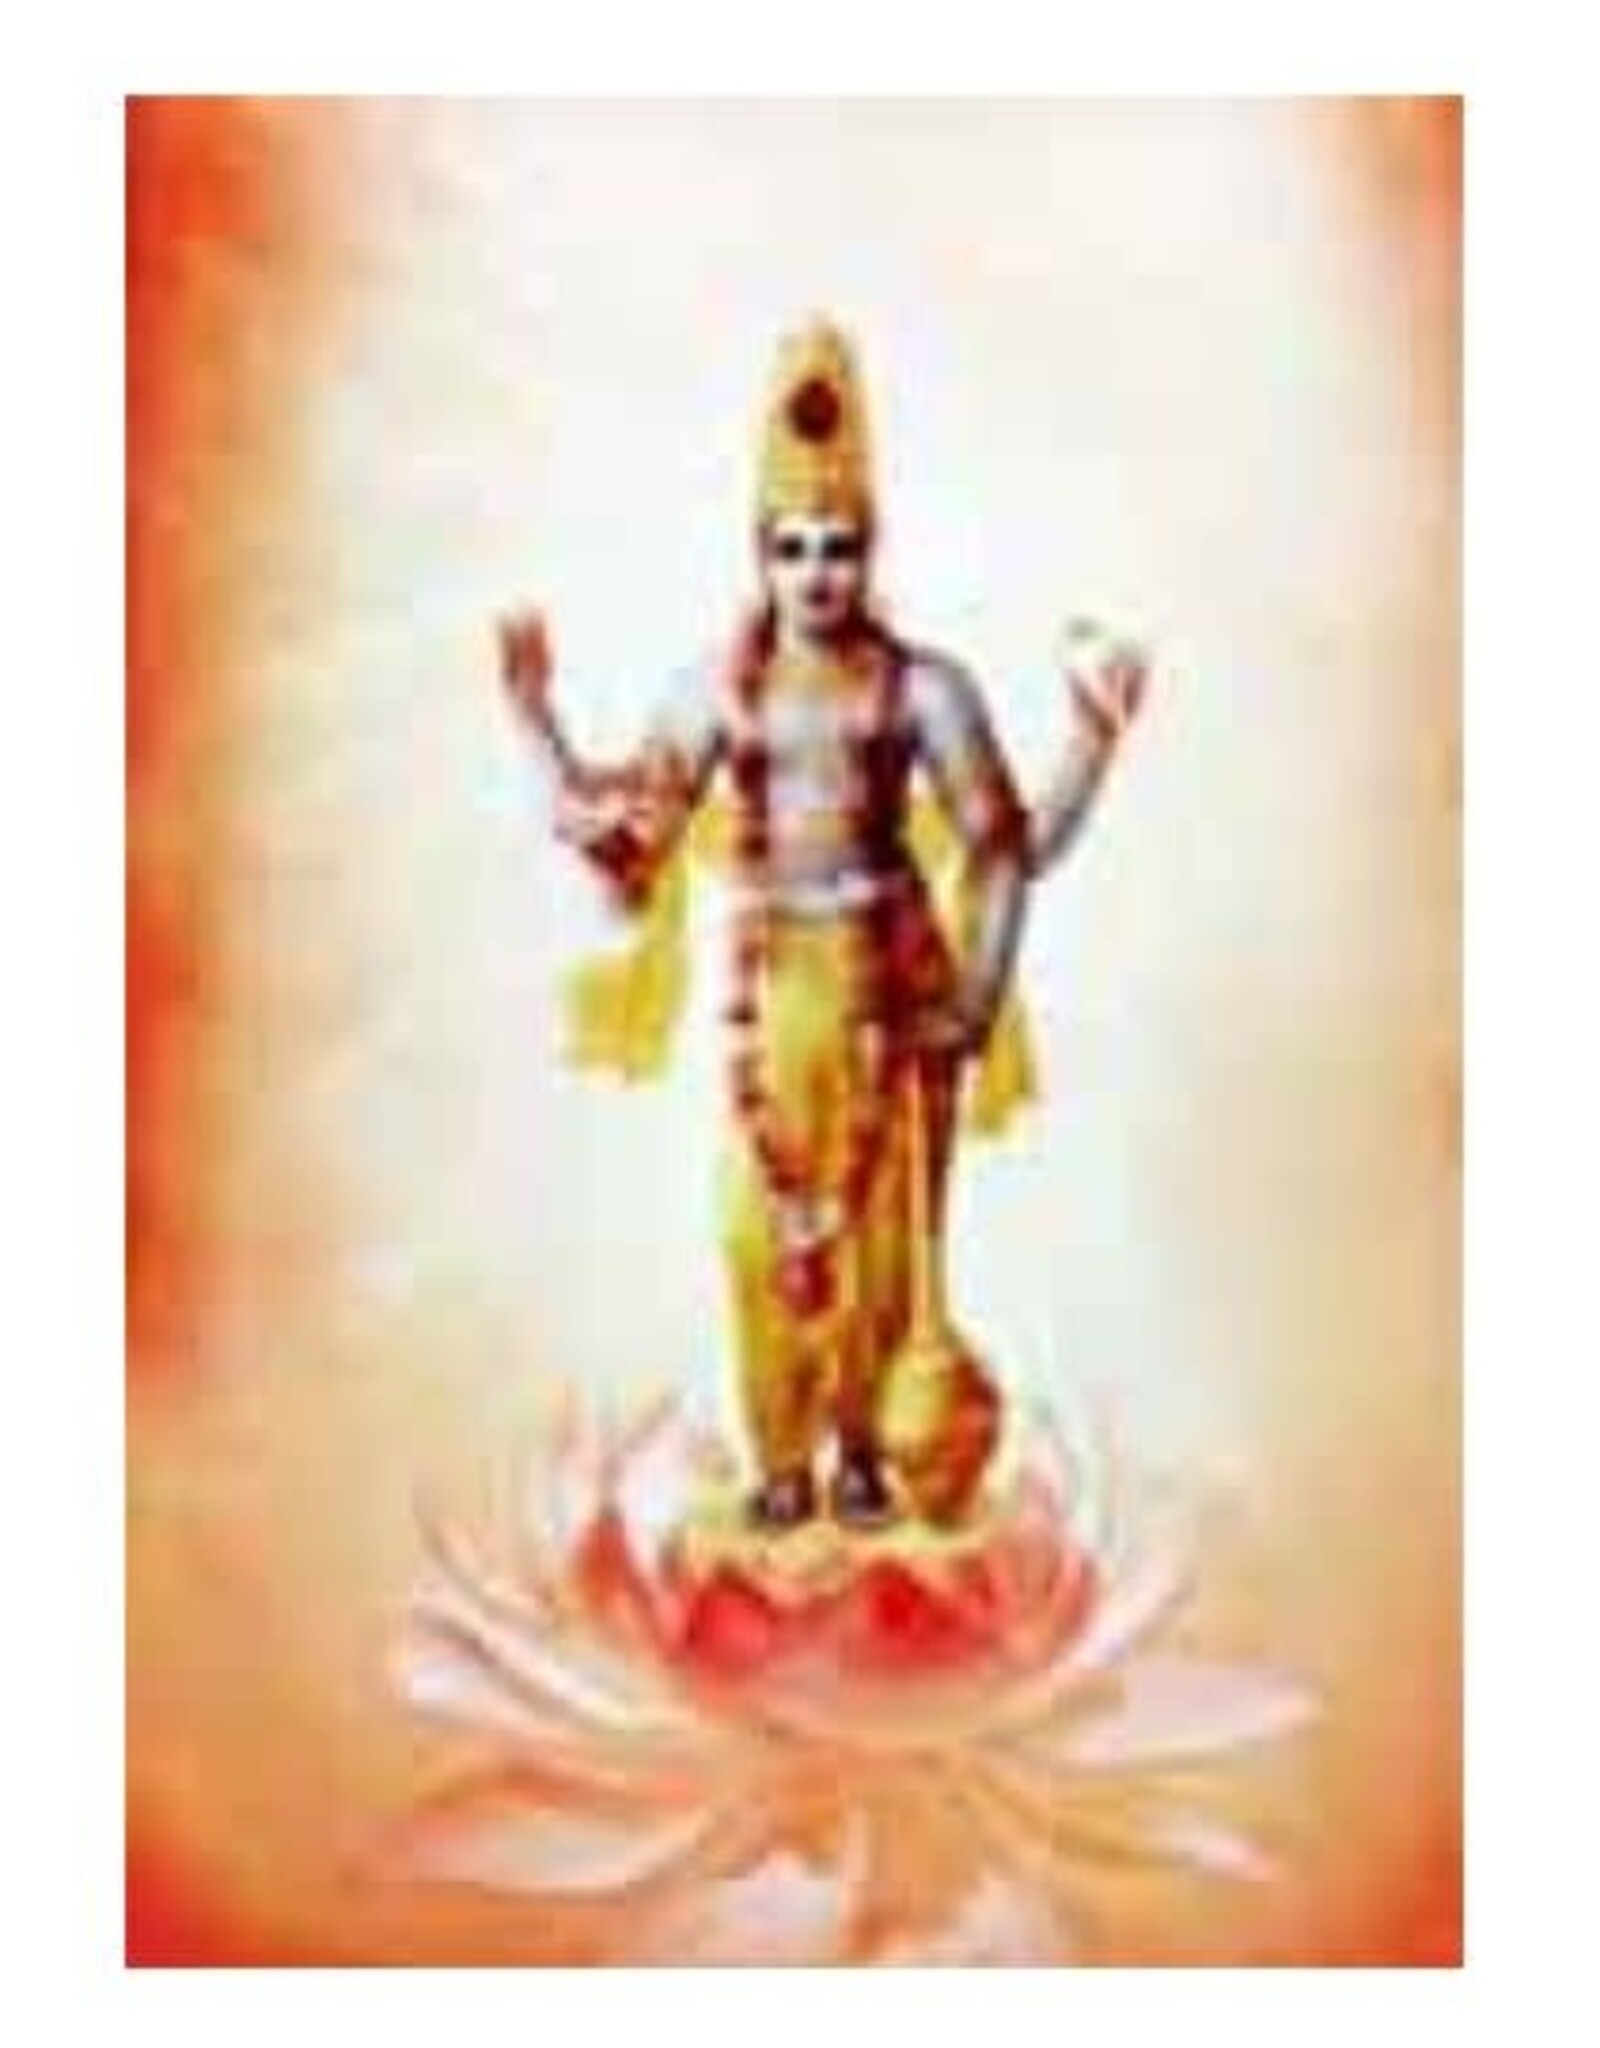 Vishnu - Laminated Cards